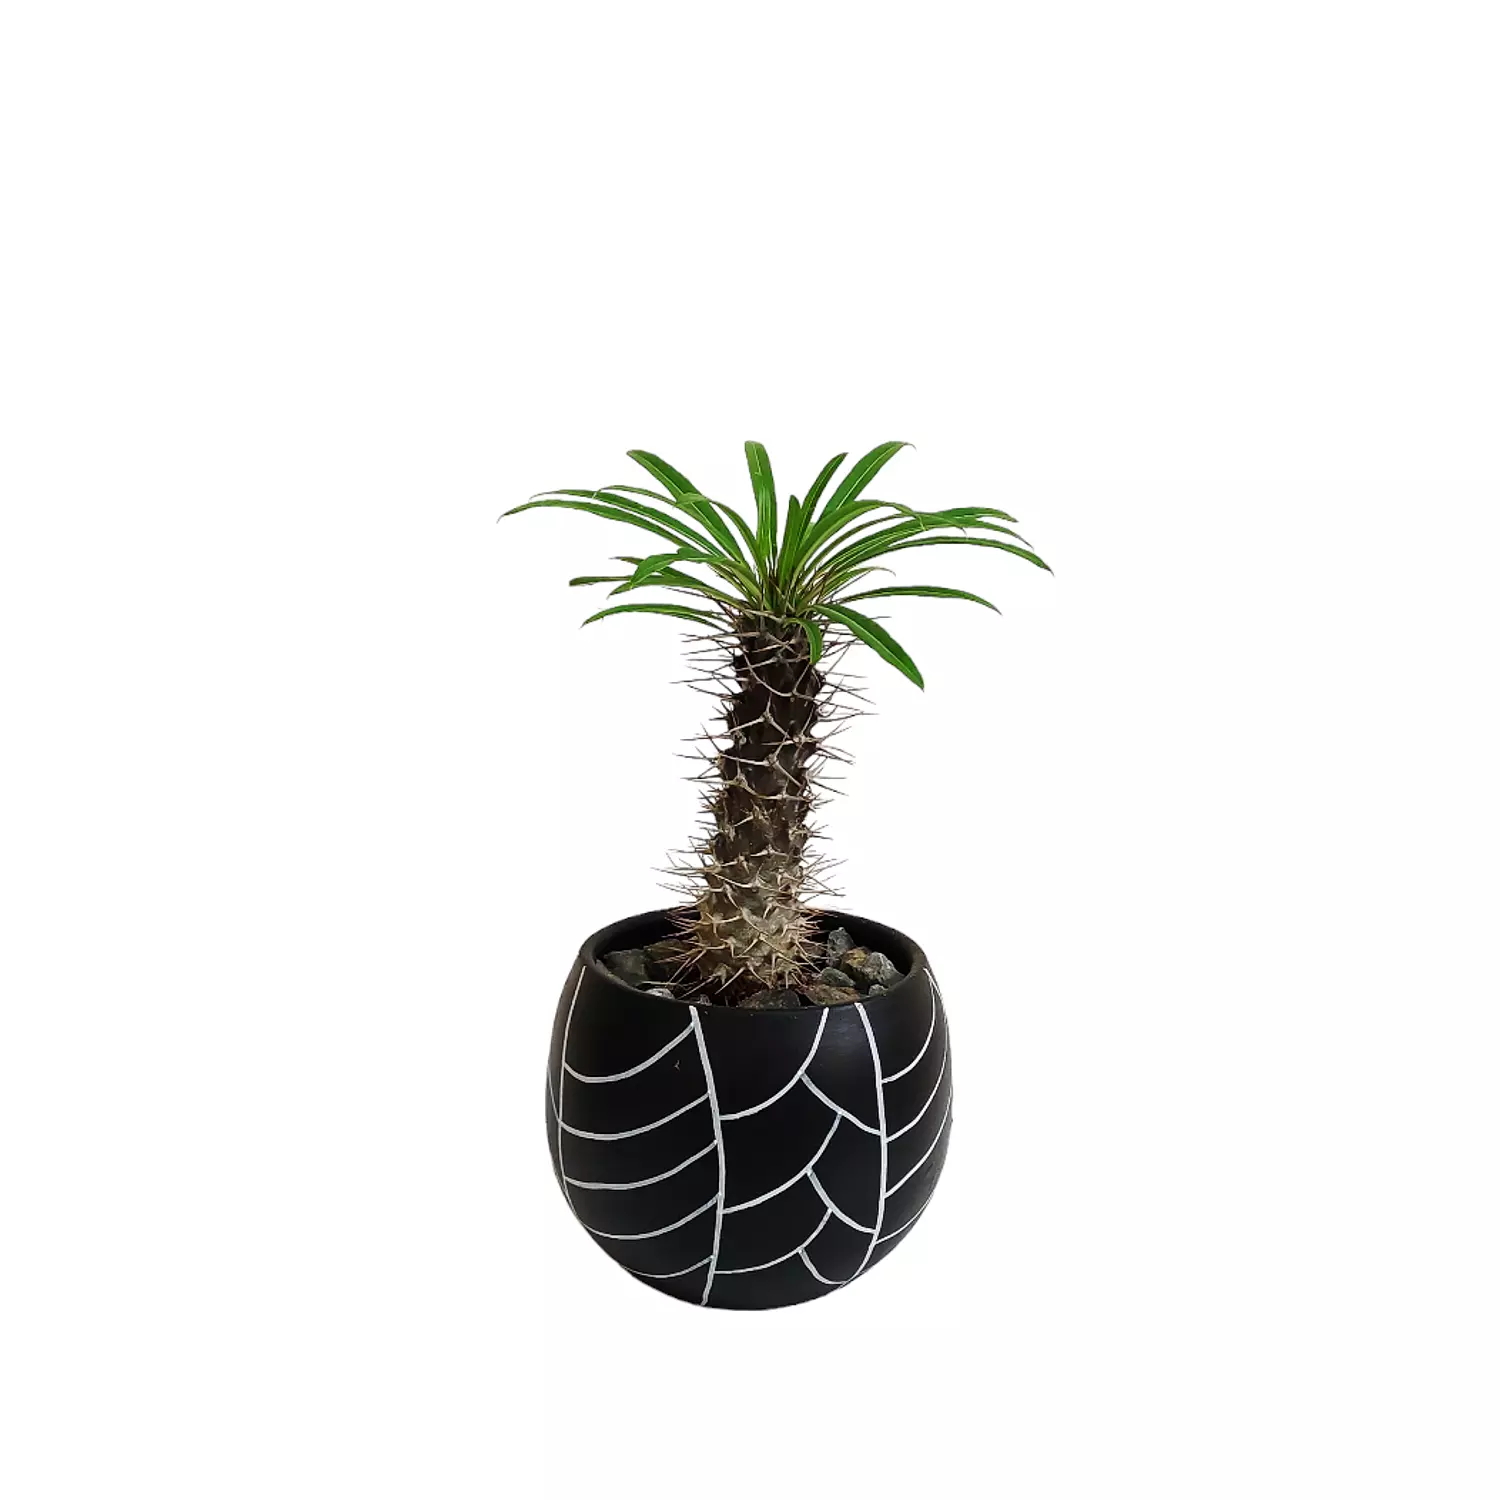 Madagascar palm hover image